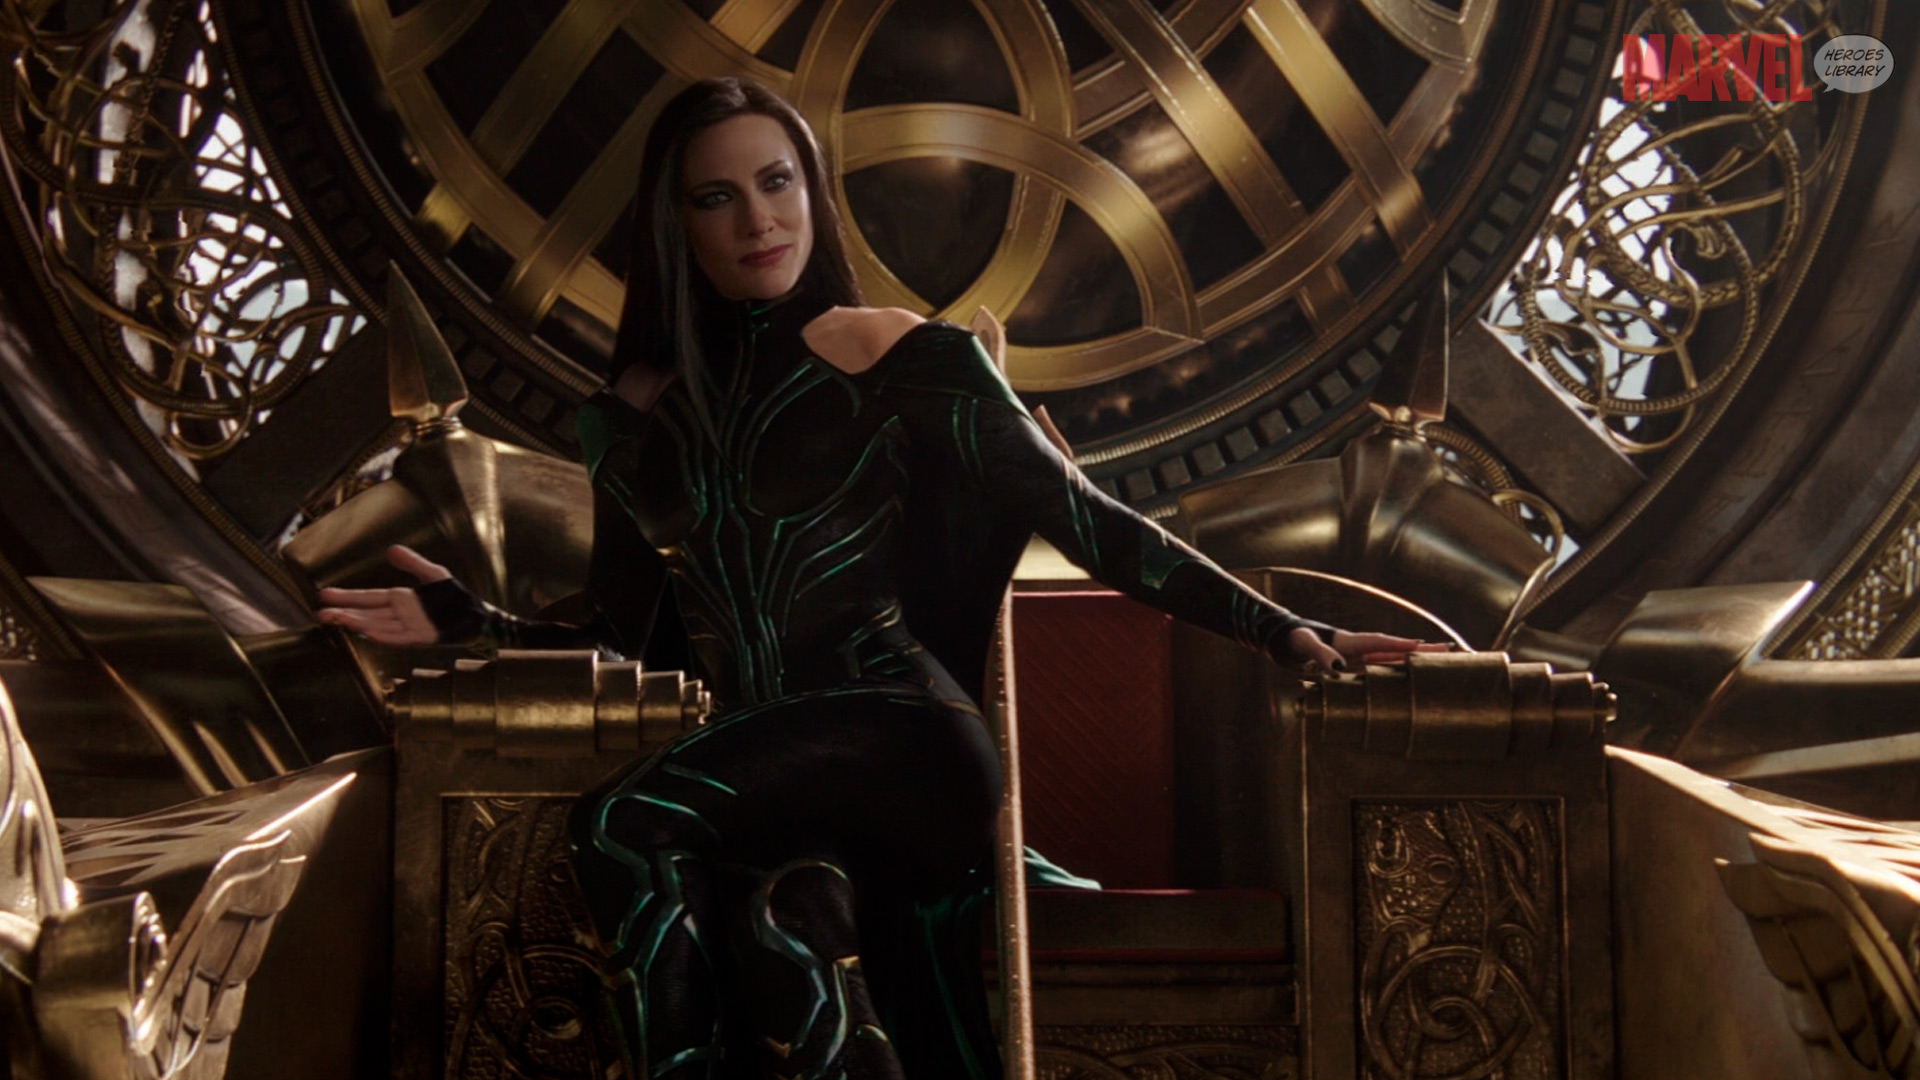 Hela on the Throne of Asgard (Ragnarok) HD Wallpaper